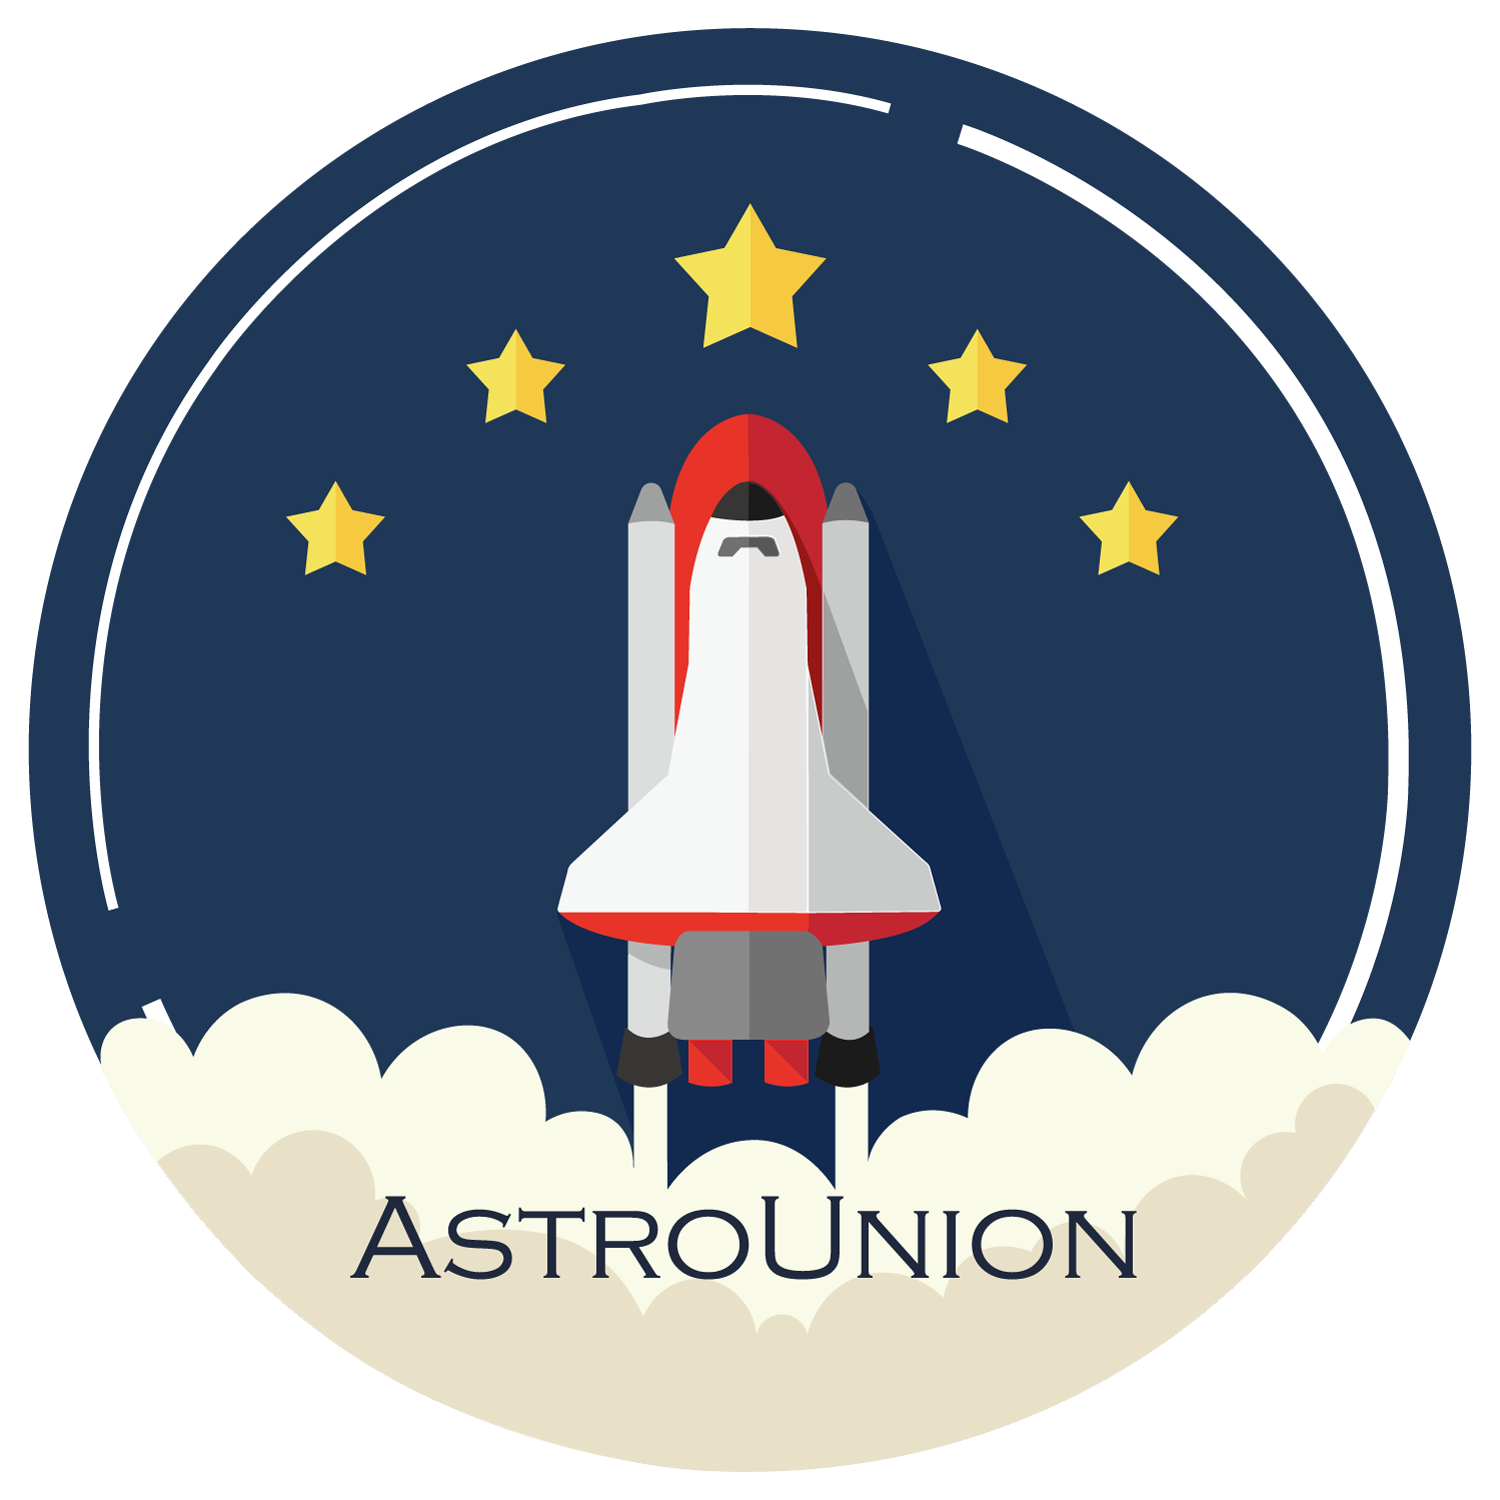 Astronomy Union